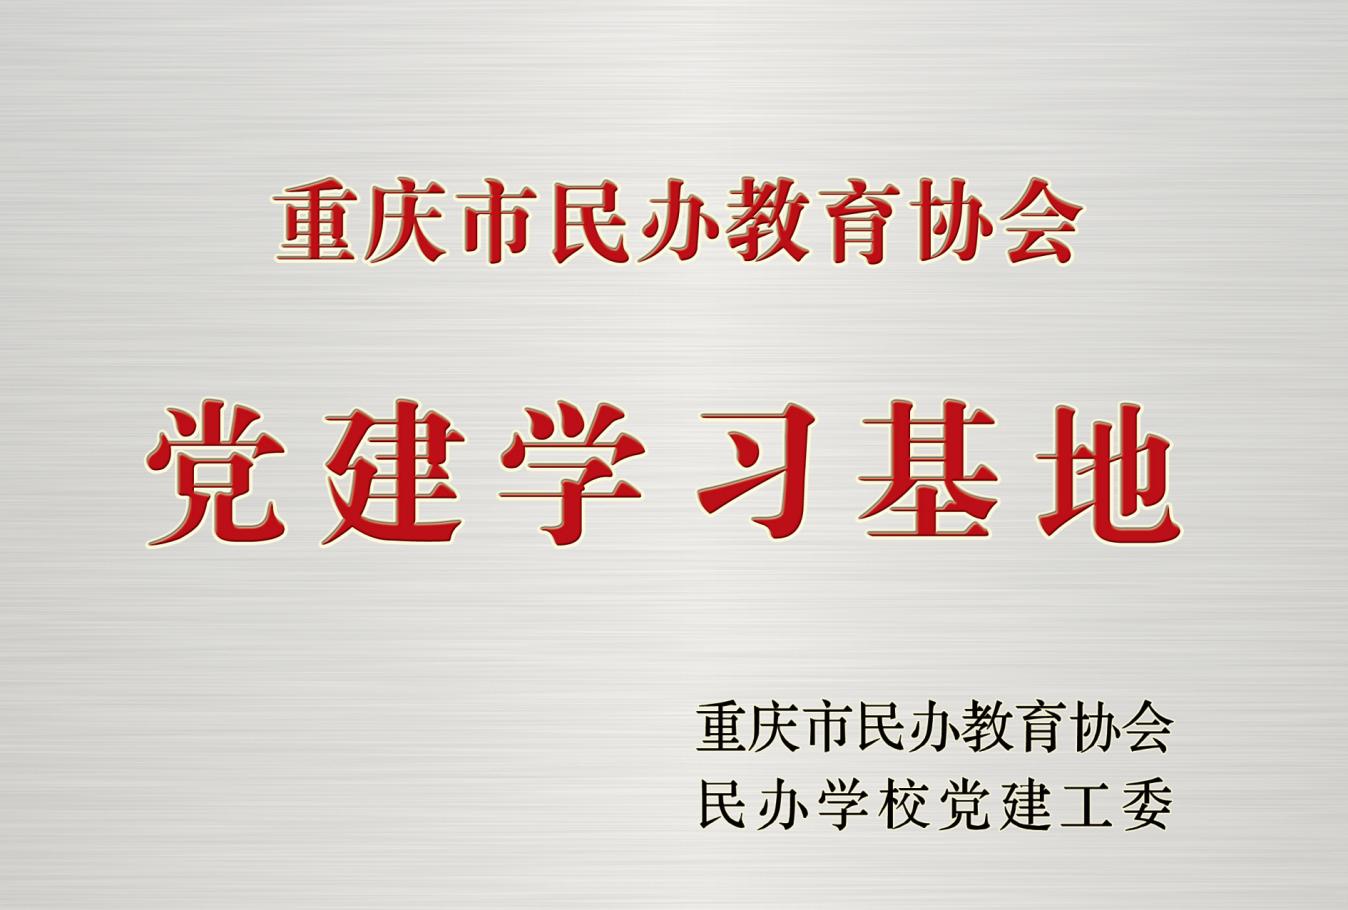 学校被重庆市民办教育协会授予“党的建设学习基地”